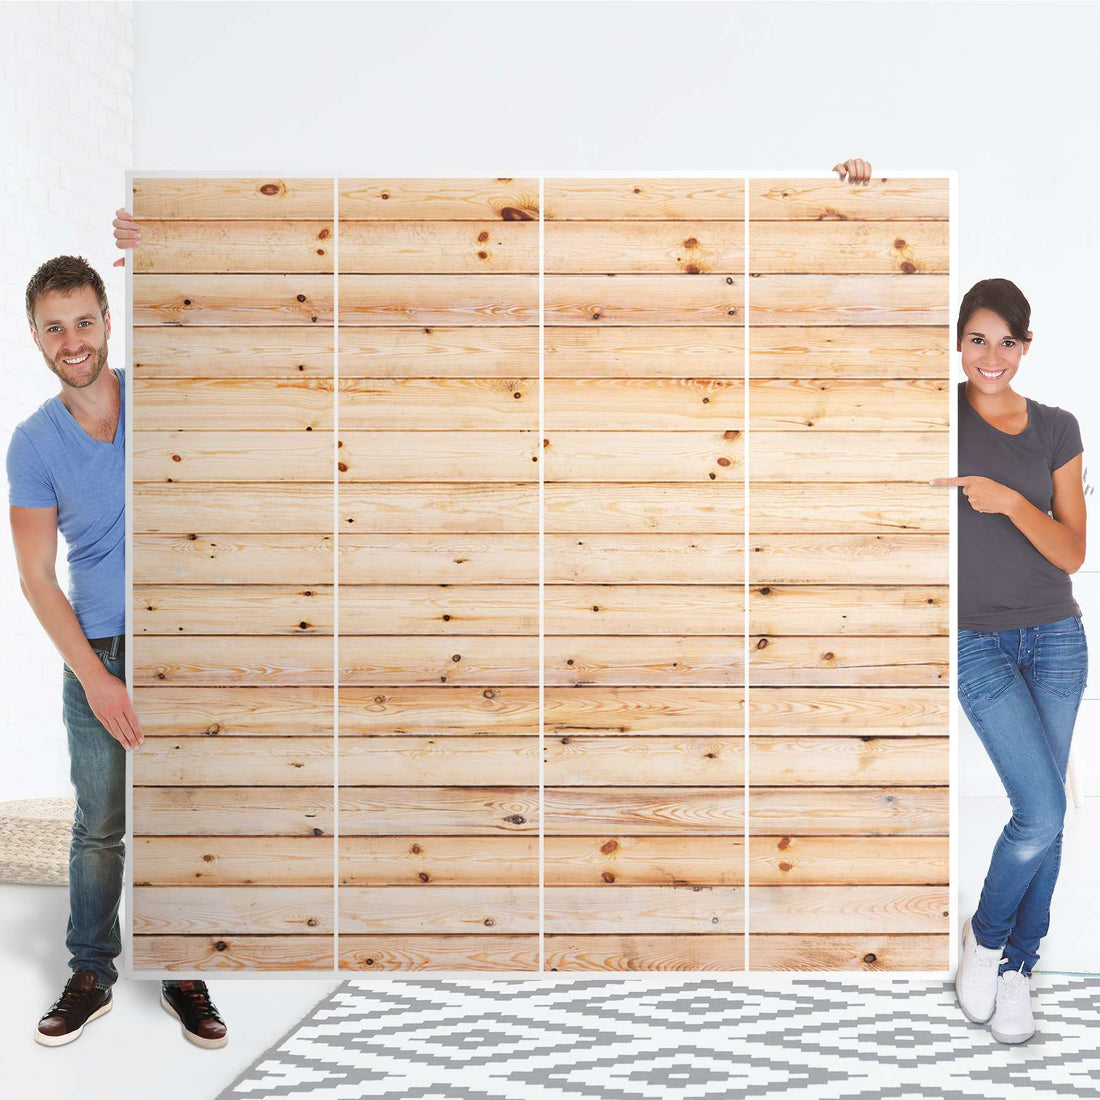 Klebefolie für Schränke Bright Planks - IKEA Pax Schrank 201 cm Höhe - 4 Türen - Folie